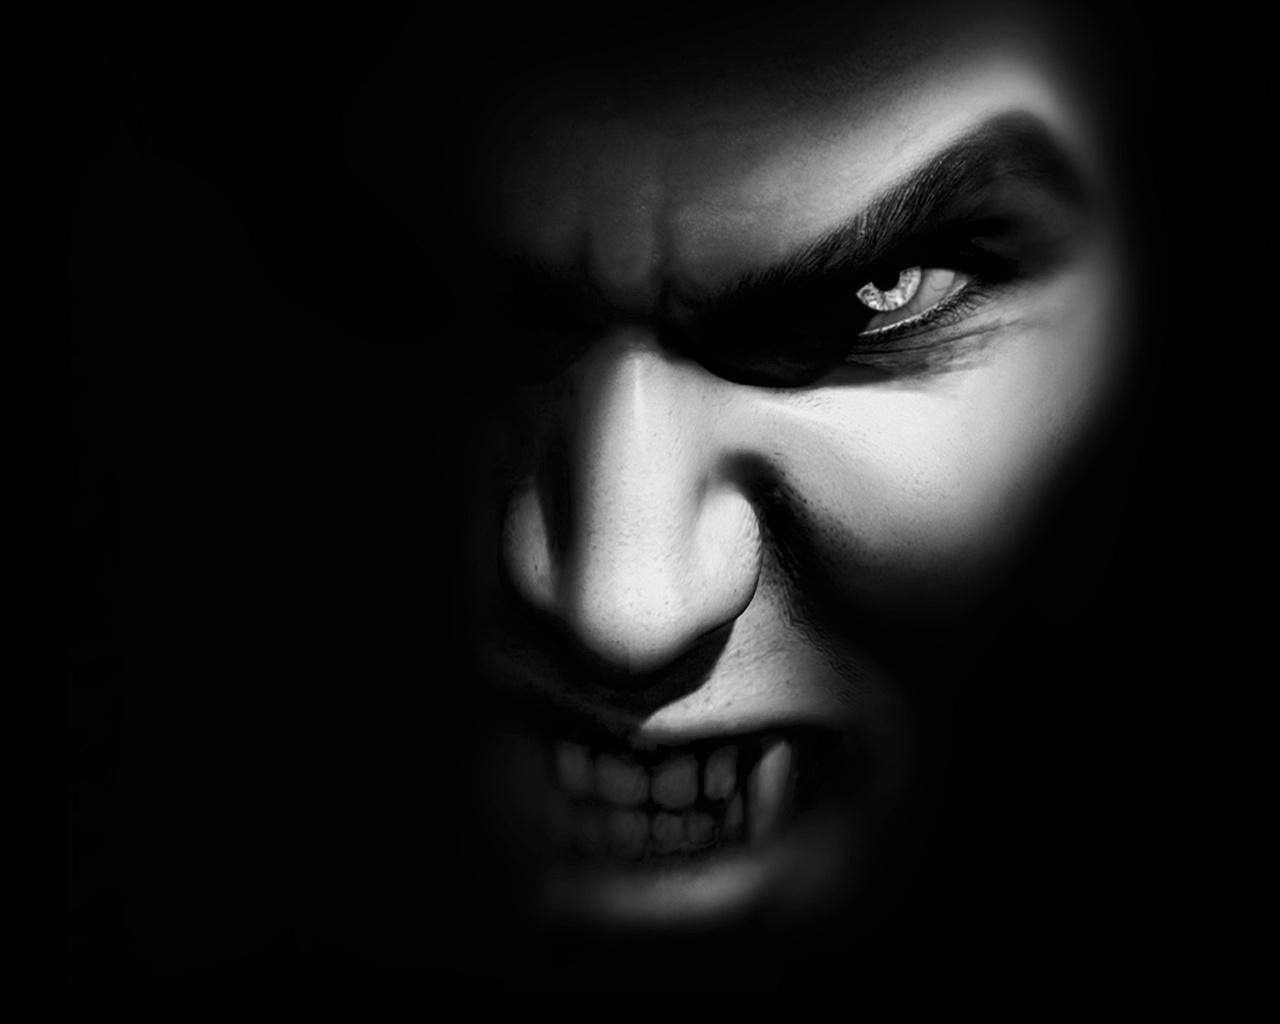 dark vampire Image